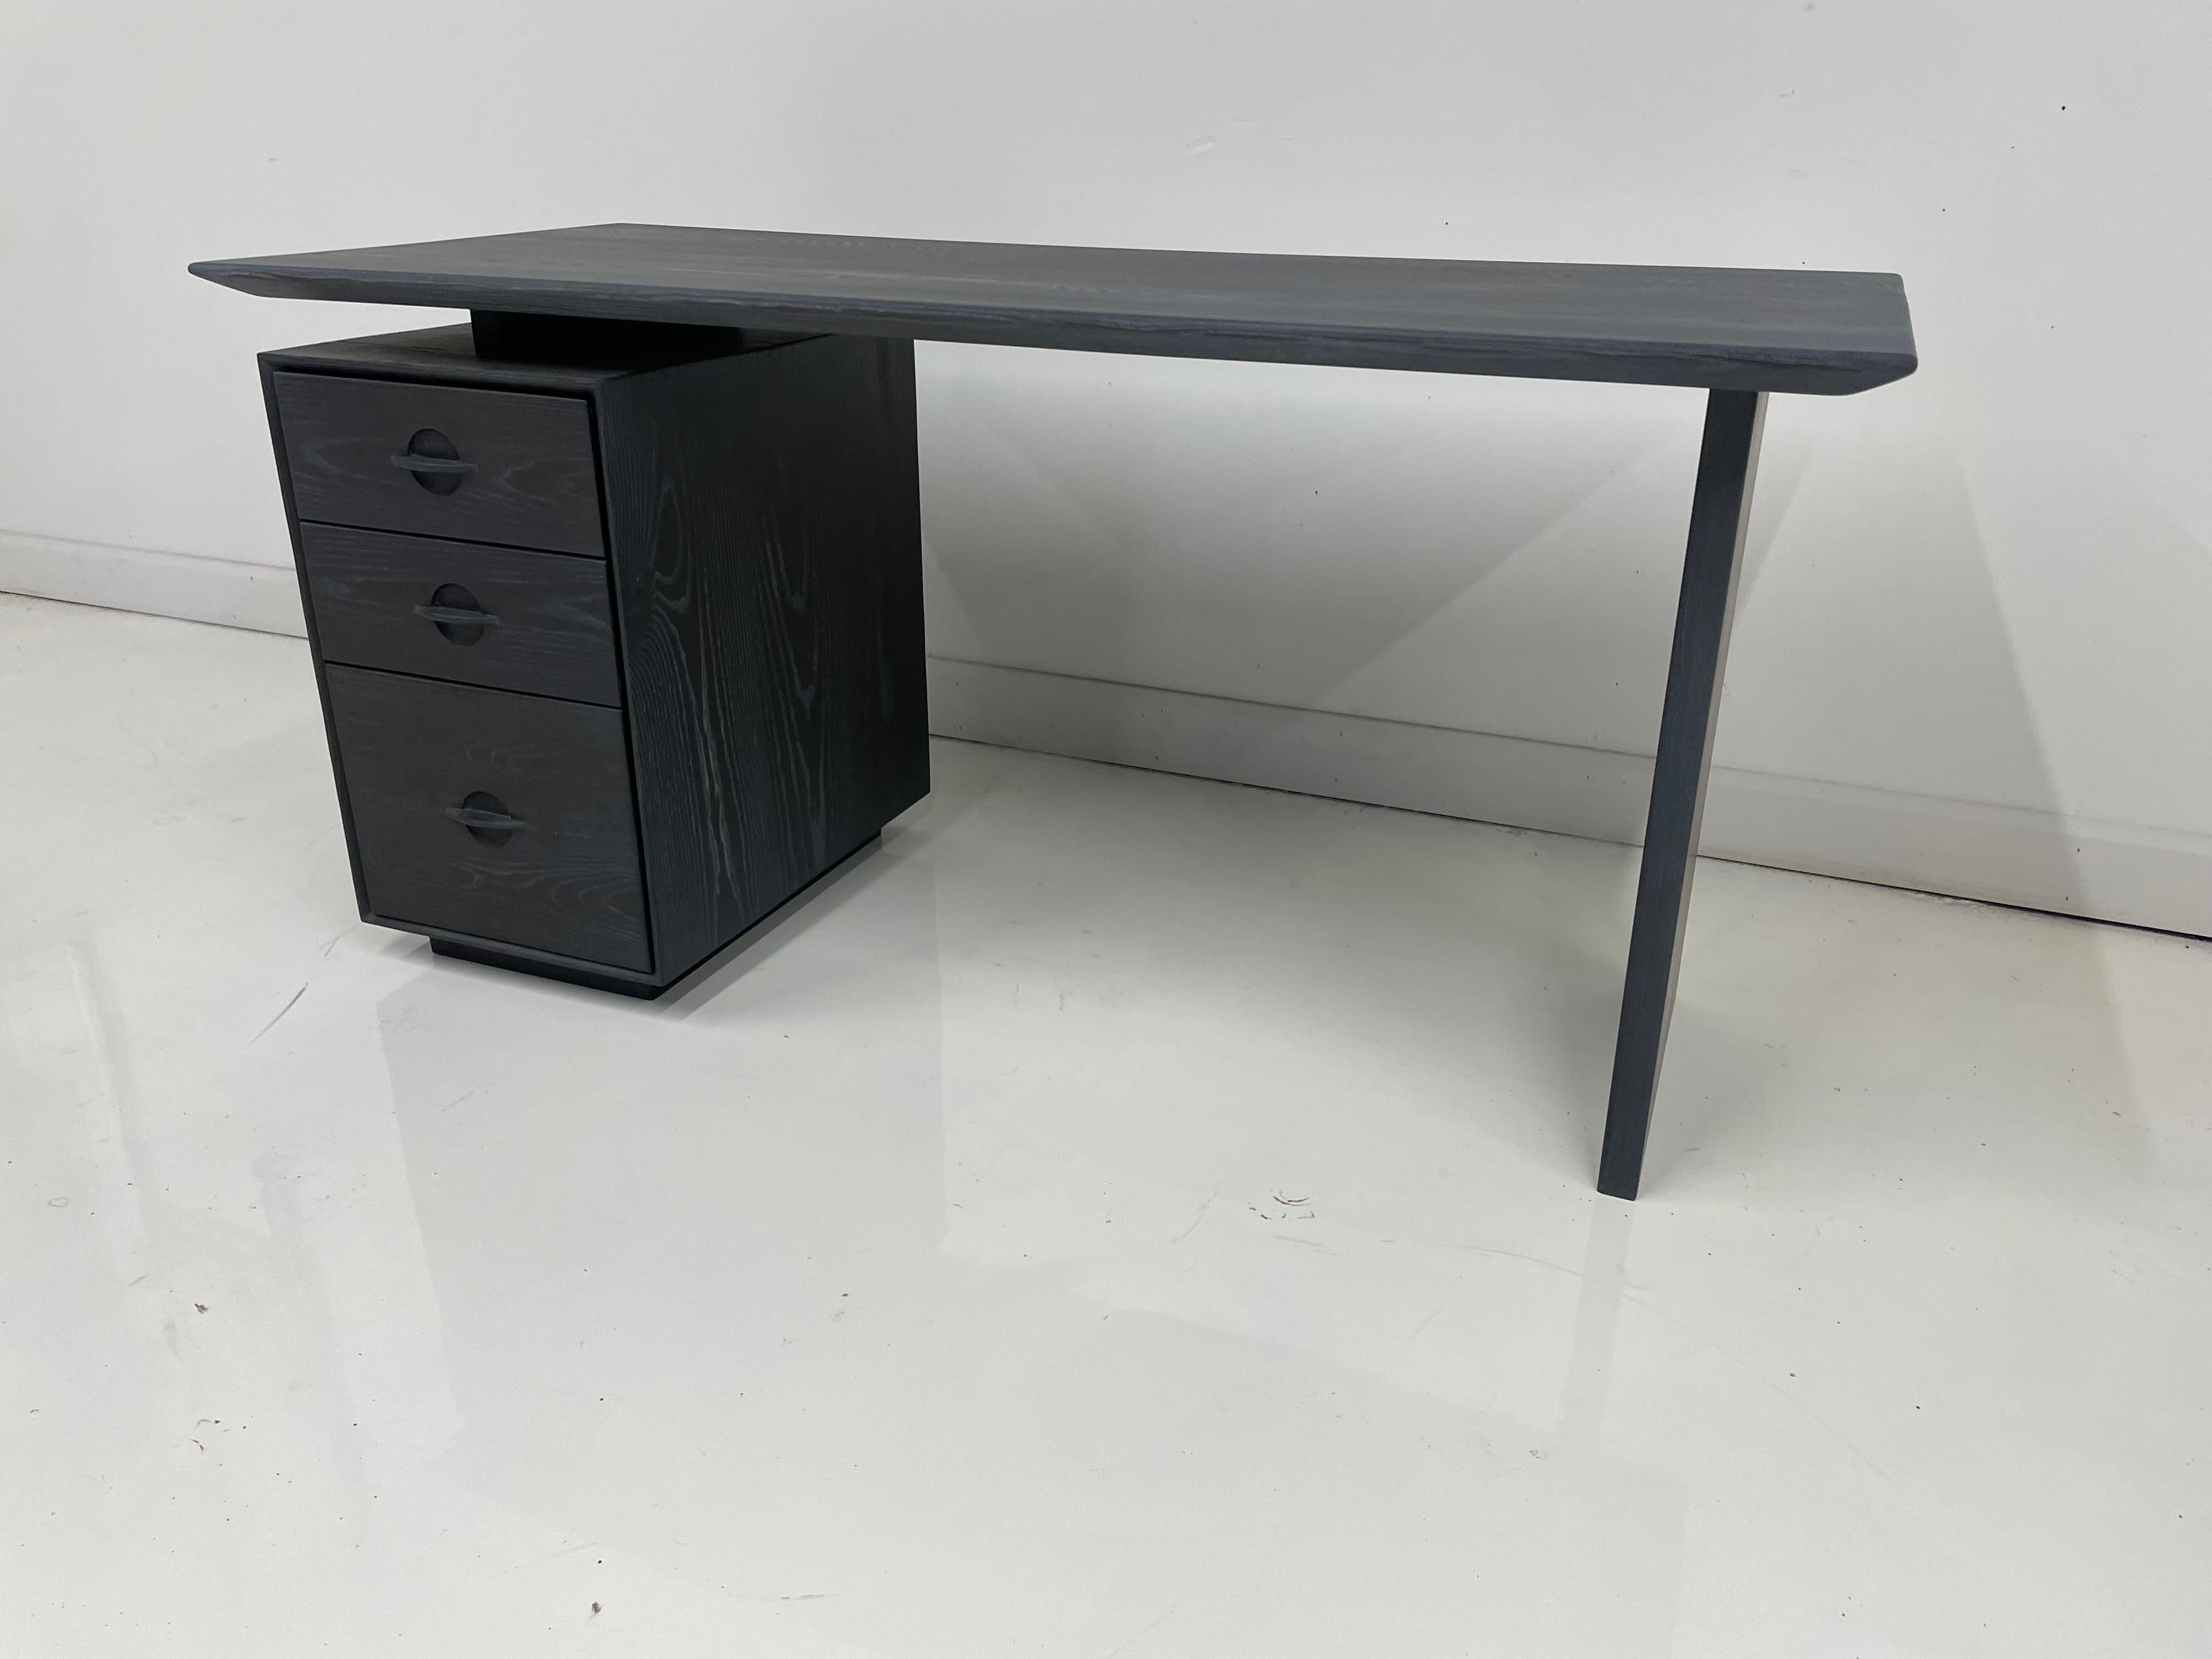 Der Odin-Schreibtisch wurde so minimalistisch wie möglich gestaltet, ohne die für einen Schreibtisch übliche Funktionalität einzuschränken. Viele moderne Schreibtische werden ohne Stauraum geliefert - für uns ein großer Nachteil (wer braucht keinen